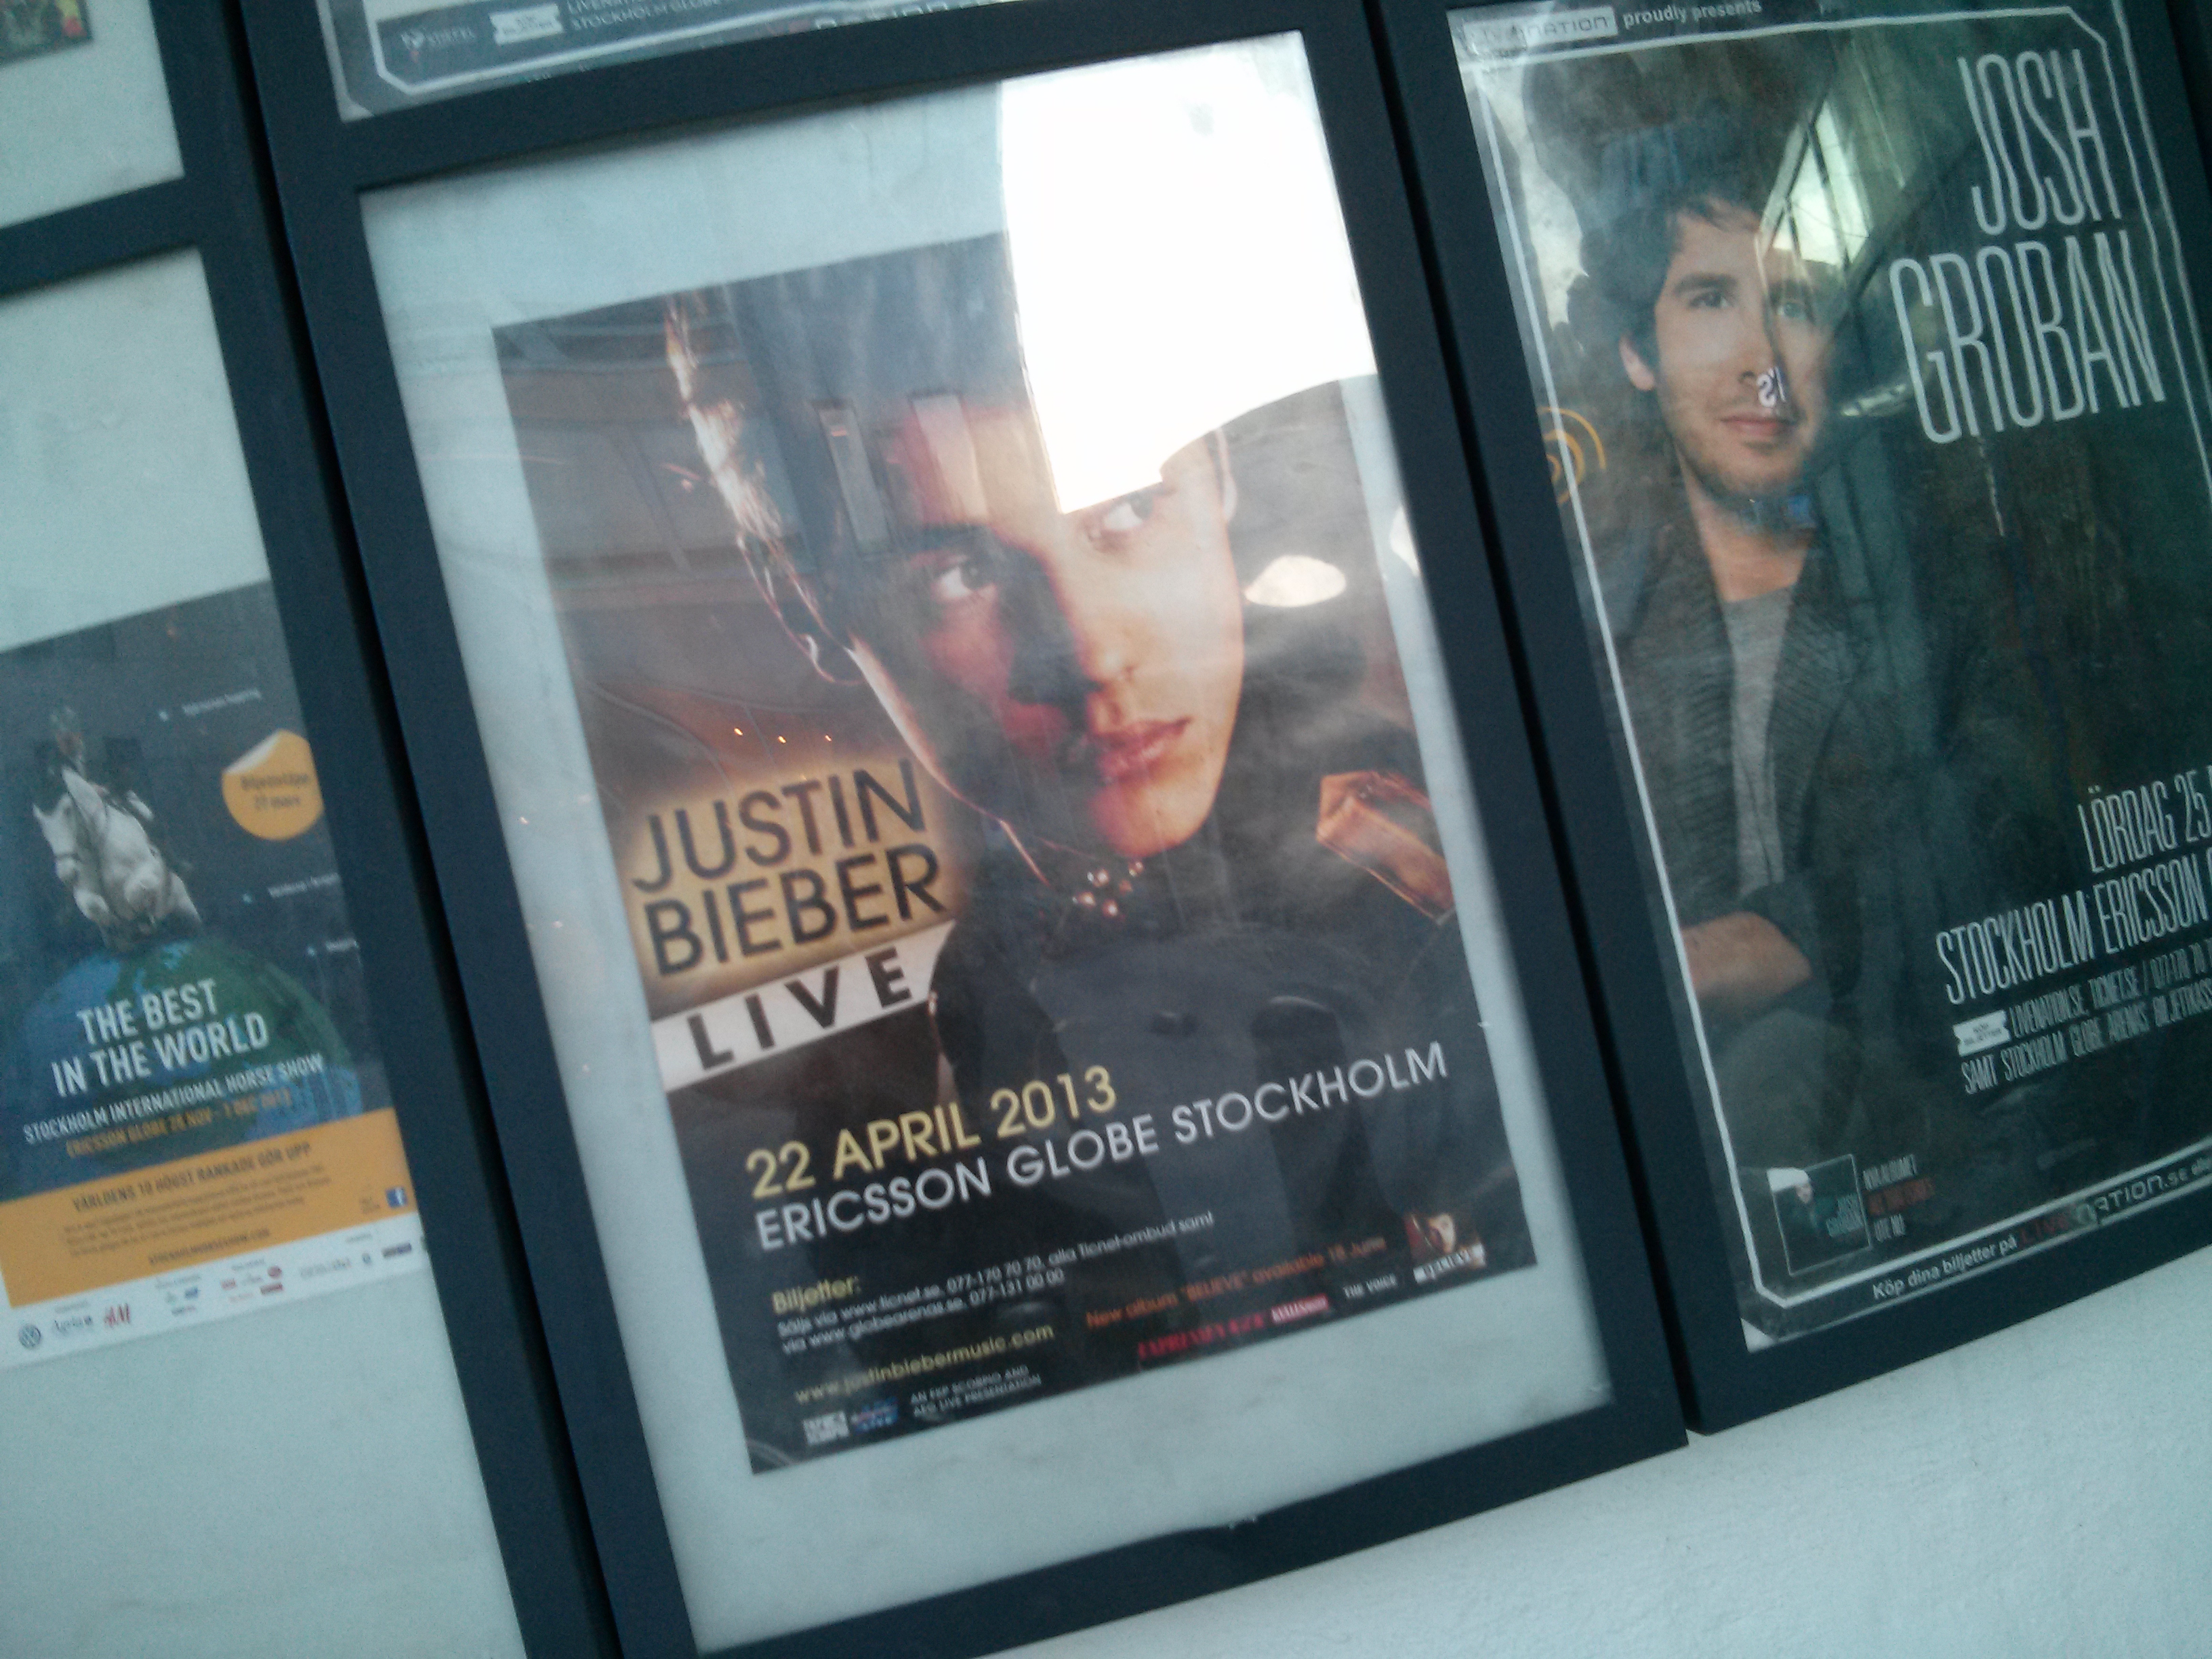 Justin Bieber posted at Globen, Stockholm